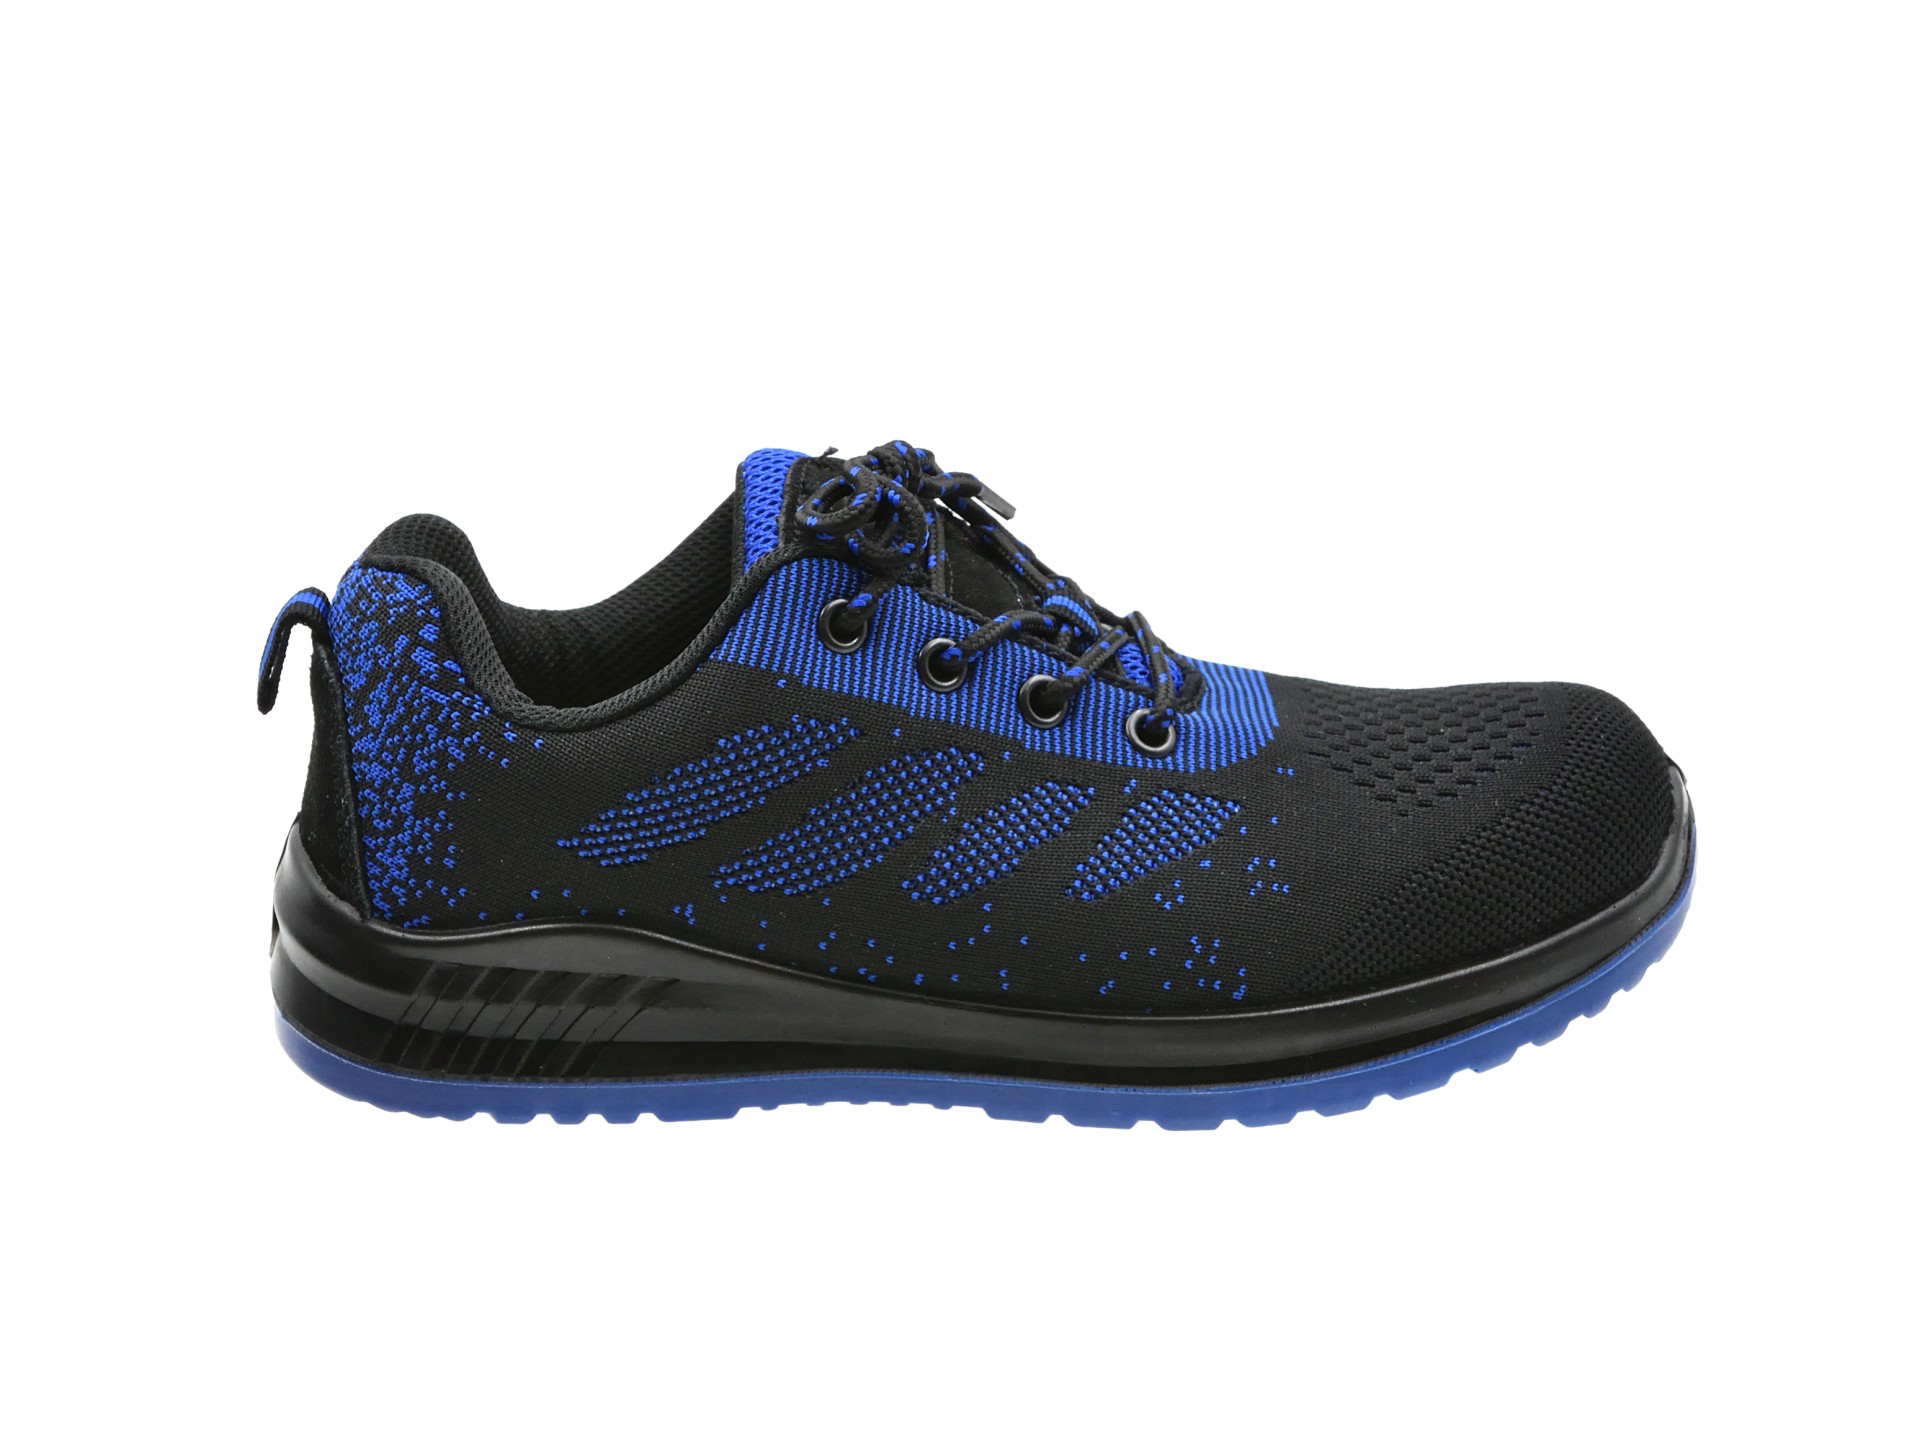 Pantofi sport de protectie GEKO, modelul nr. 5 S1P SRC, marimea 46, culoare albastru-negru